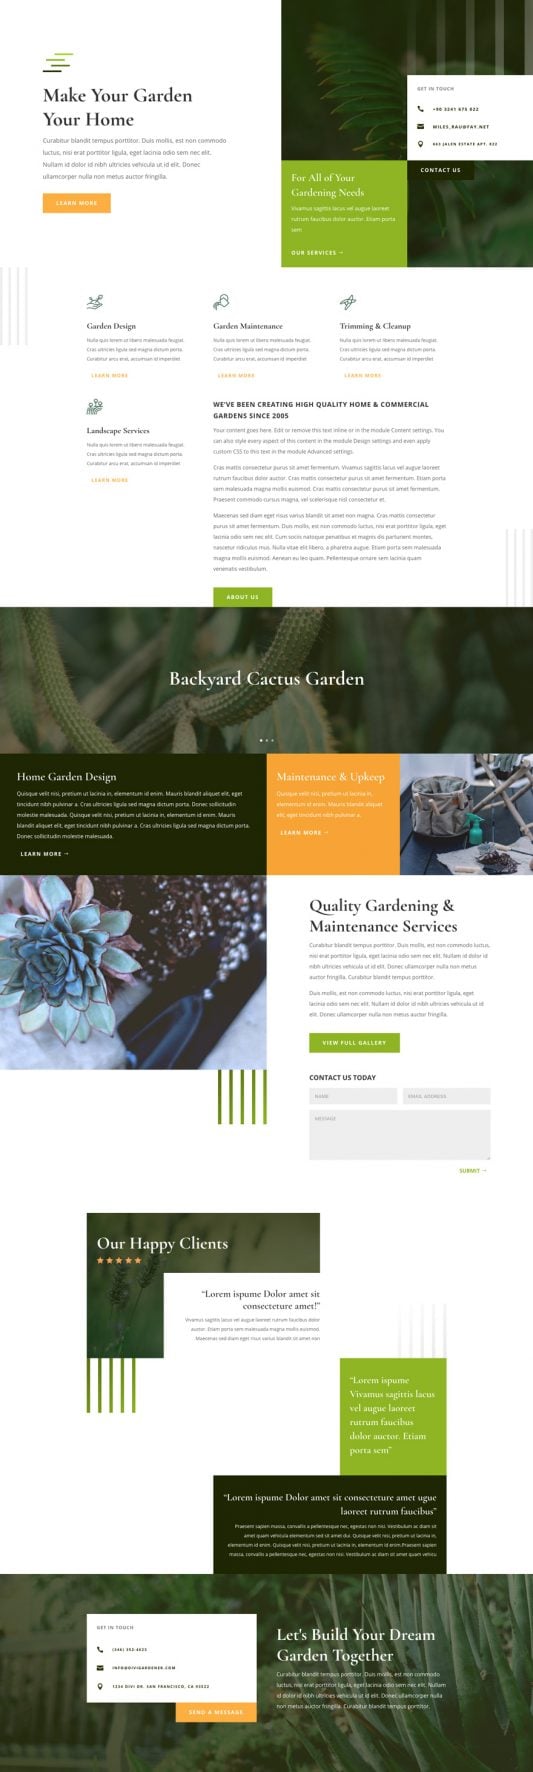 responsive garden center web design